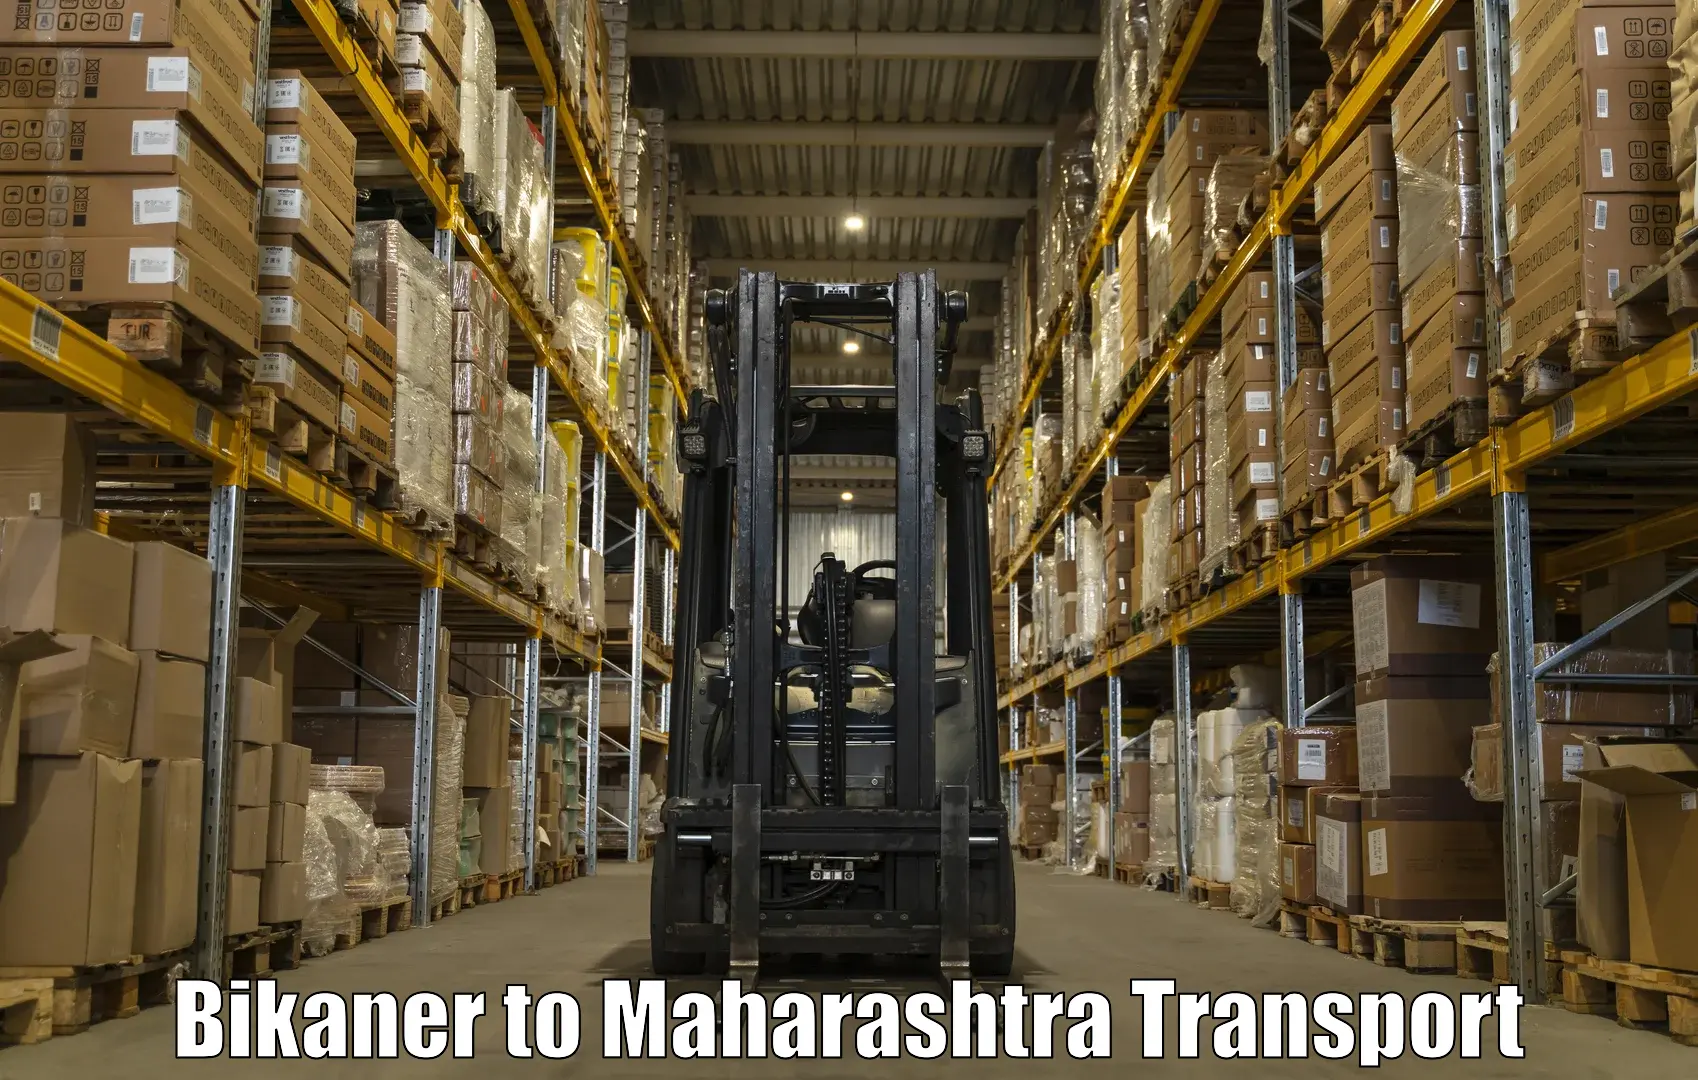 Truck transport companies in India Bikaner to IIIT Pune